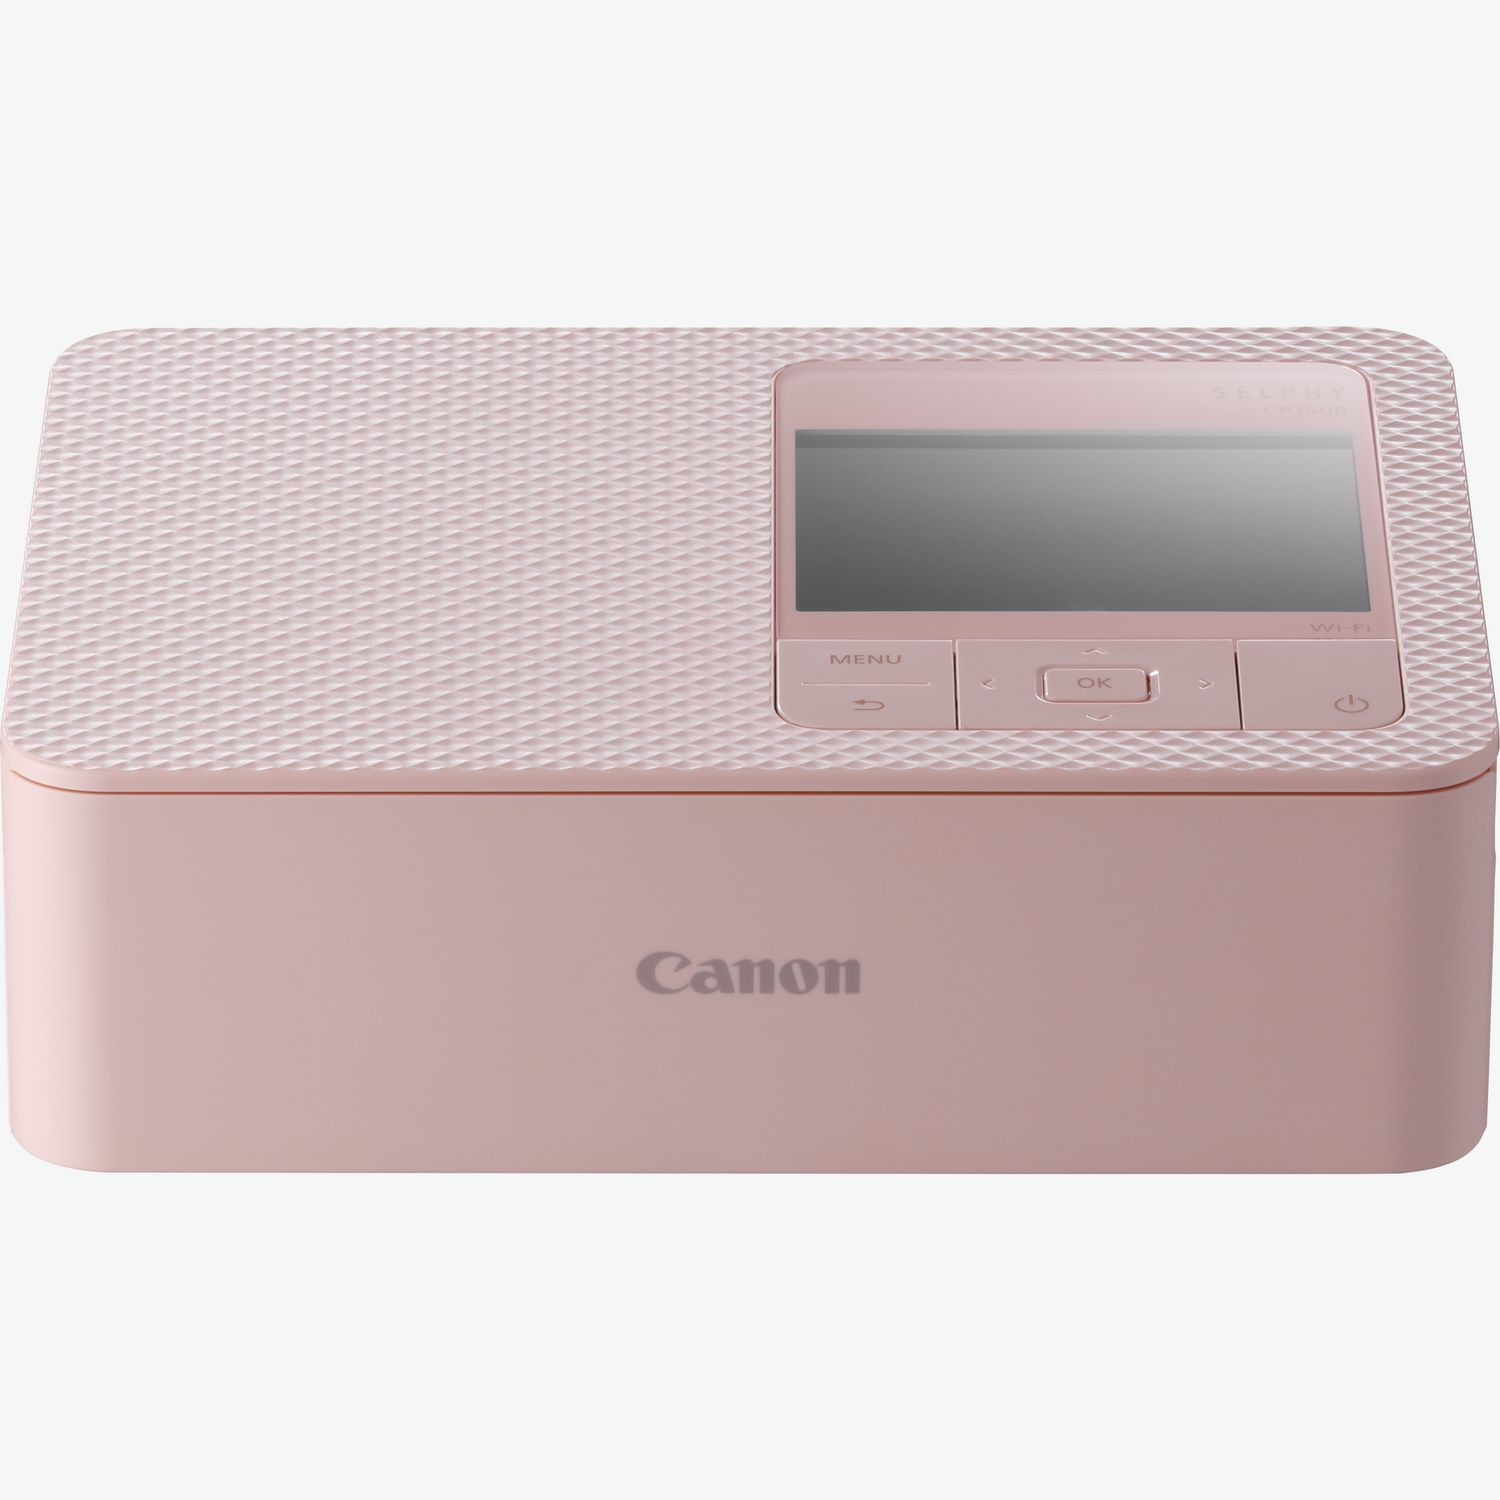 Comprar Impresora fotográfica en color portátil Canon Zoemini, oro rosa +  20 hojas de papel fotográfico de 5 x 7 cm + 10 hojas de adhesivos  circulares en Interrumpido — Tienda Canon Espana